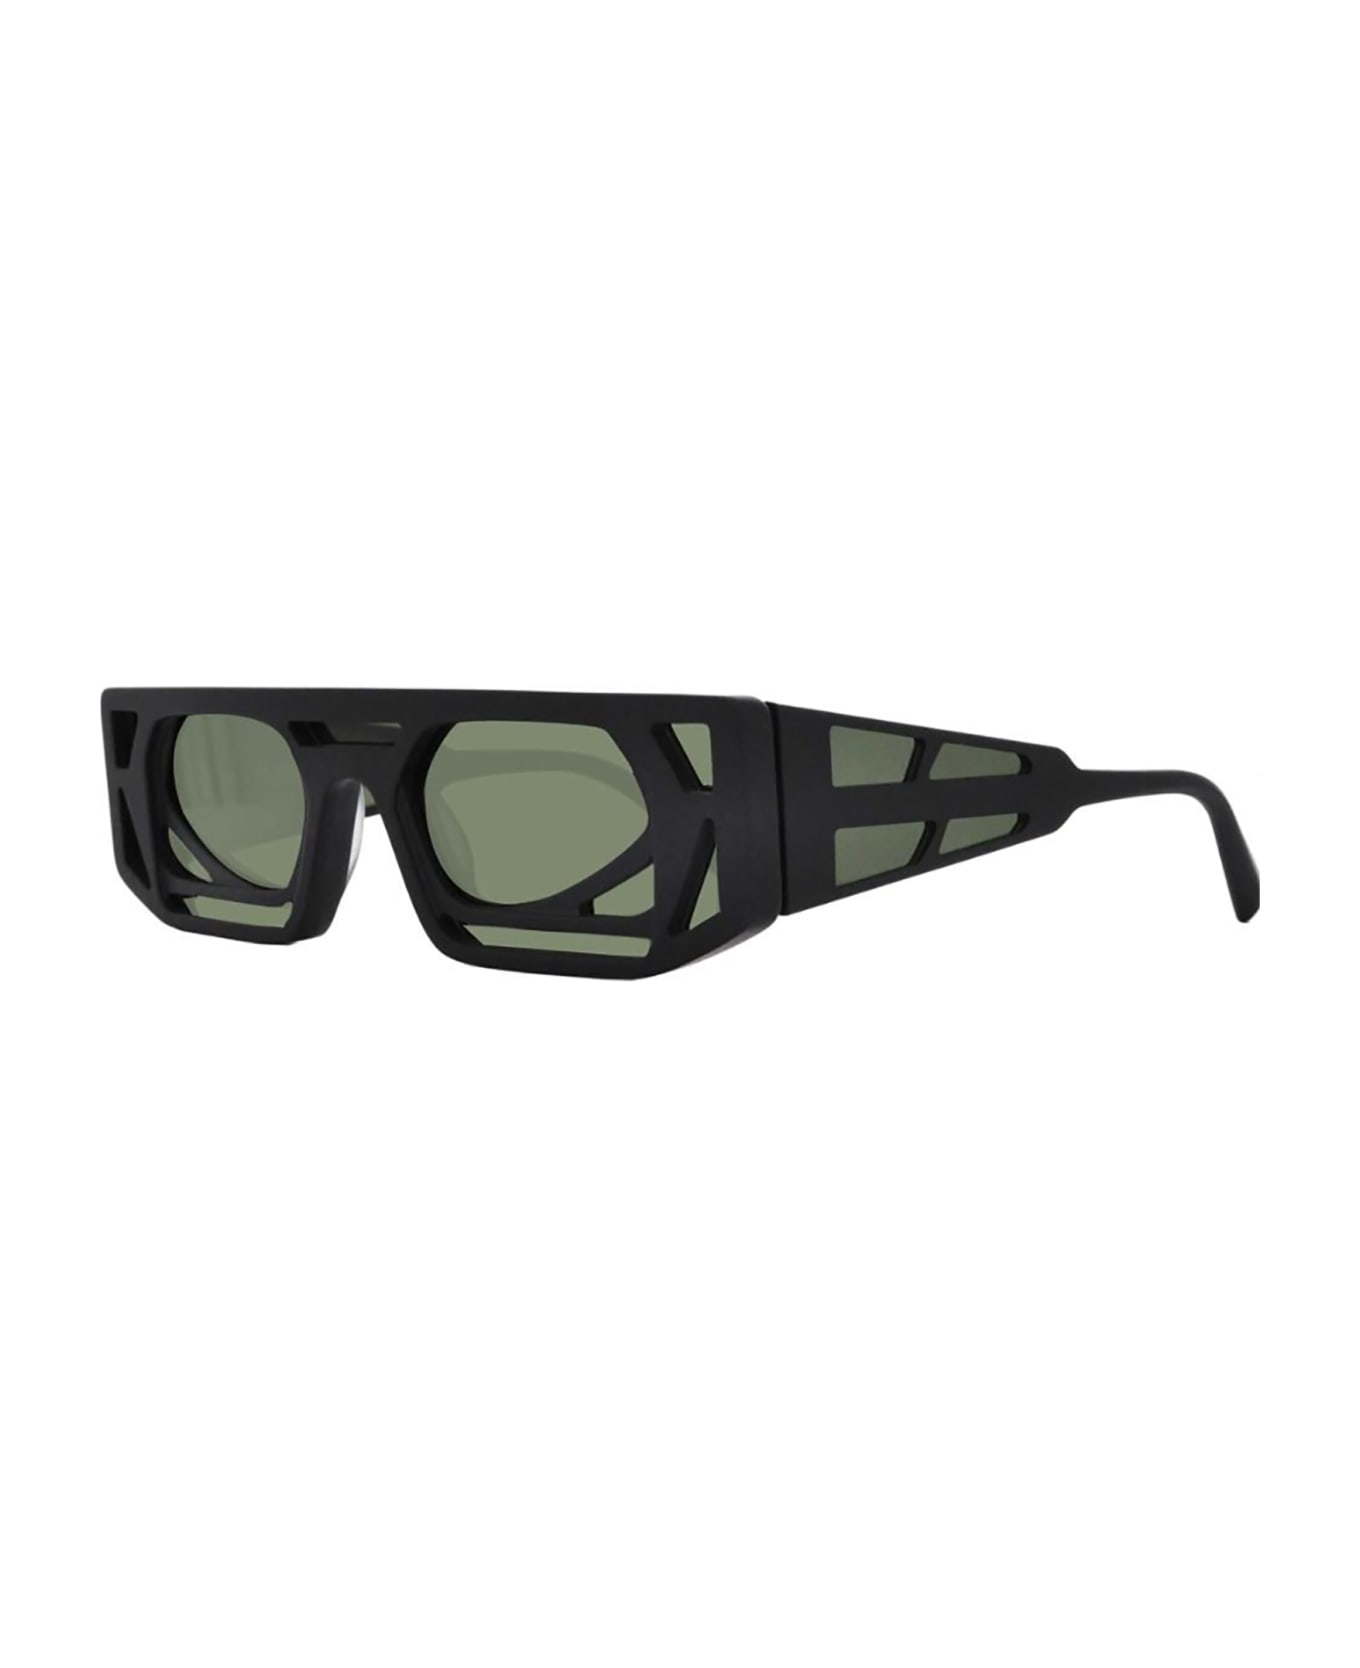 Kuboraum T9 Sunglasses - Bm